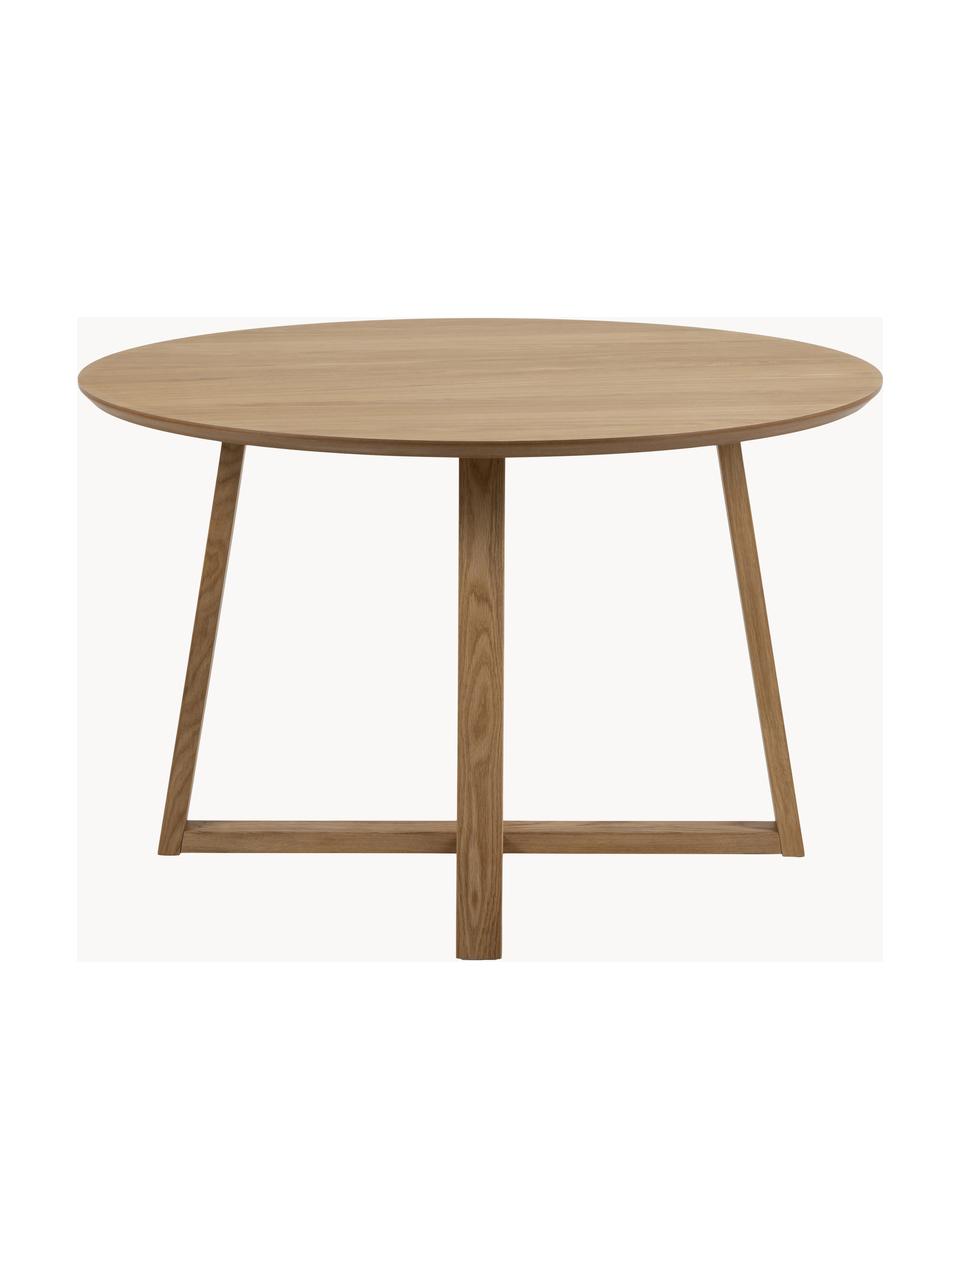 Okrúhly stôl z brezového dreva Malika, Ø 120 cm, Brezové drevo, ošetrené olejom, Brezové drevo, Ø 120 cm